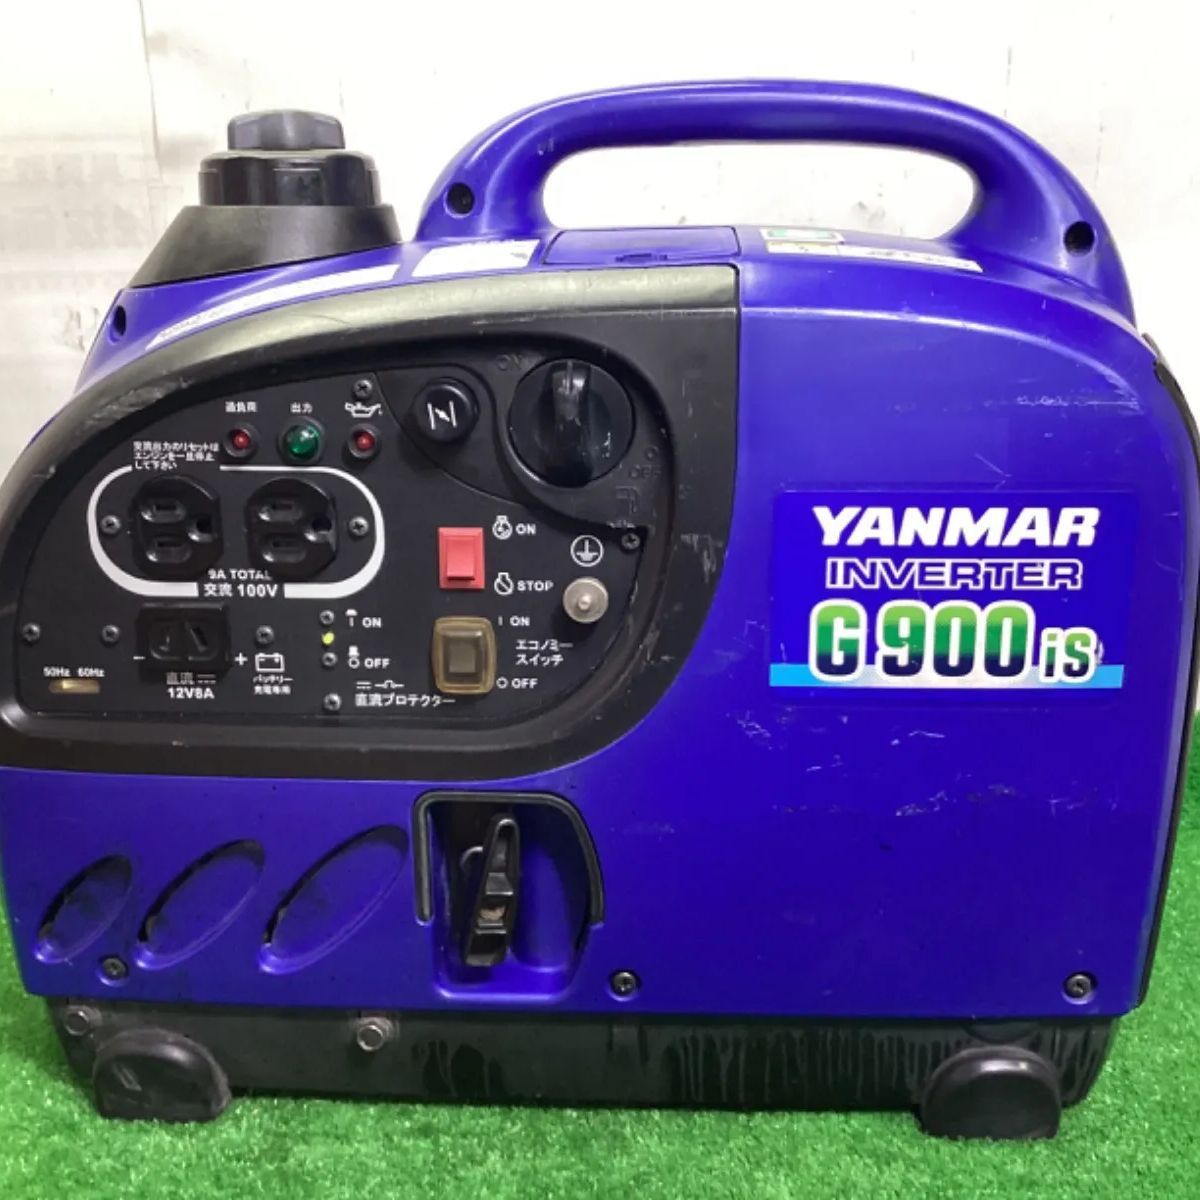 発電機 ヤンマー G900is インバーター発電機 建設機械 100V 軽量 小型 ガソリン 工事 防災 充電 釣り 非常用 YANMAR 7H14  - 工具、DIY用品